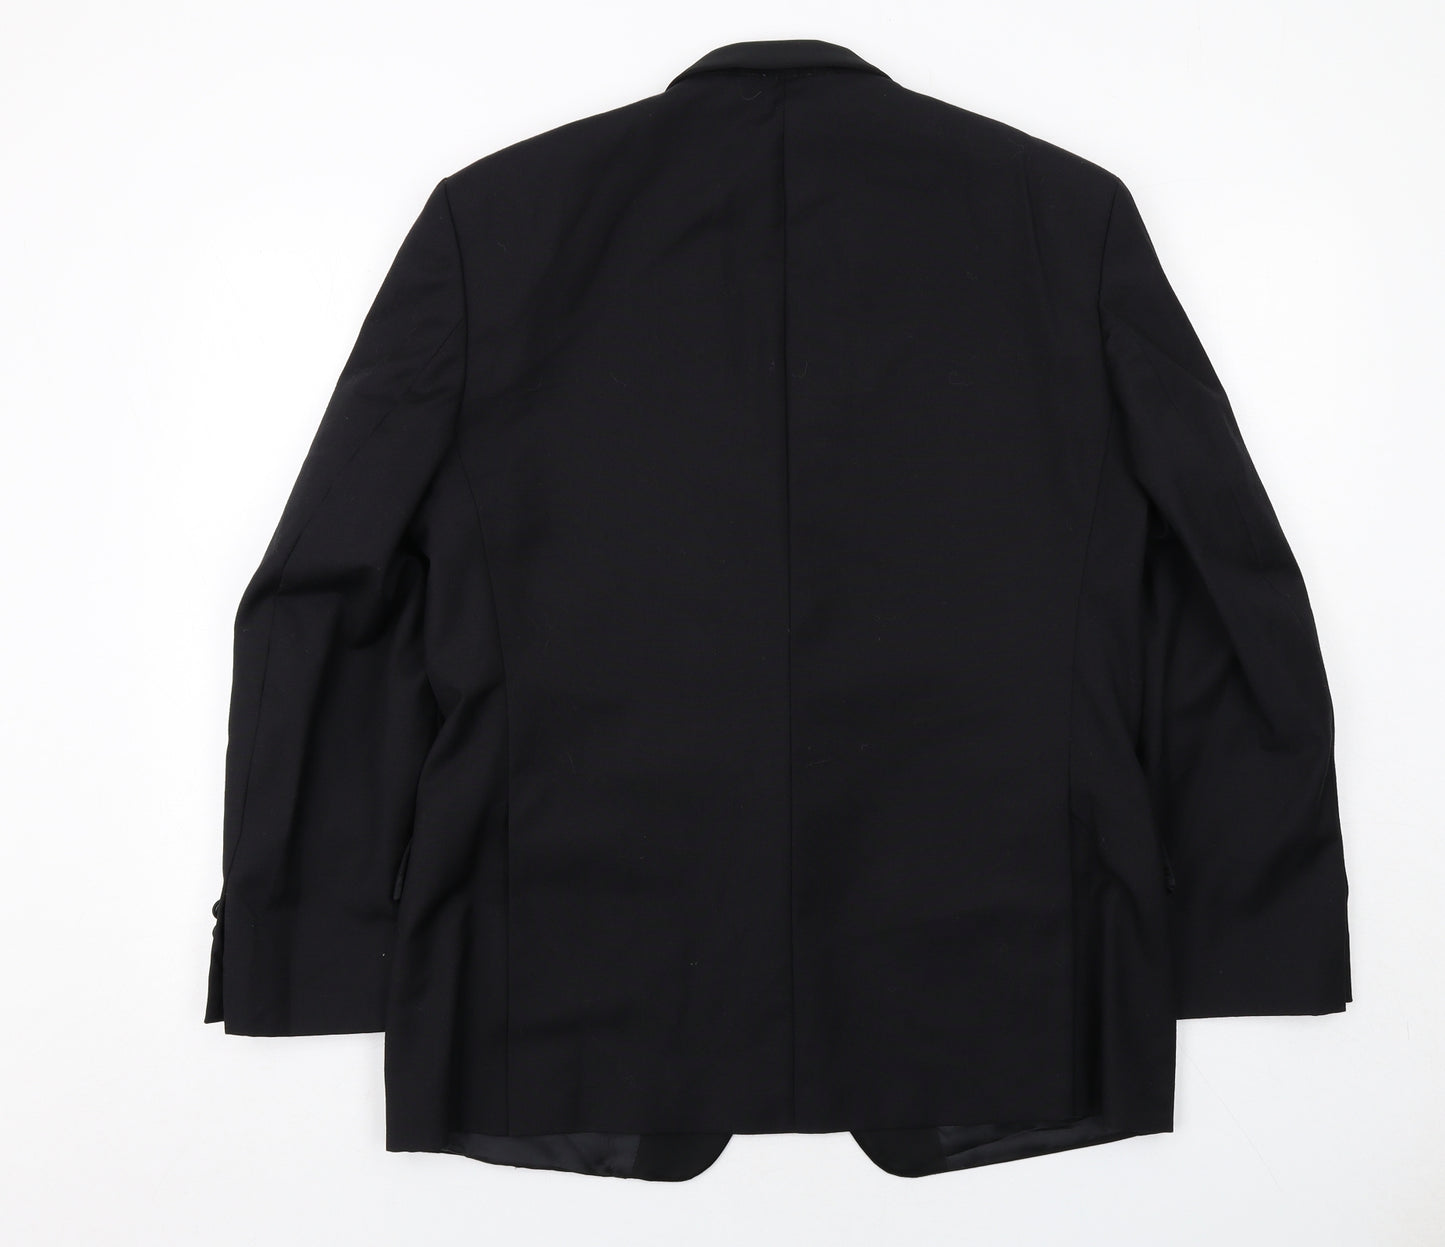 Pierre Cardin Mens Black Wool Tuxedo Suit Jacket Size 40 Regular